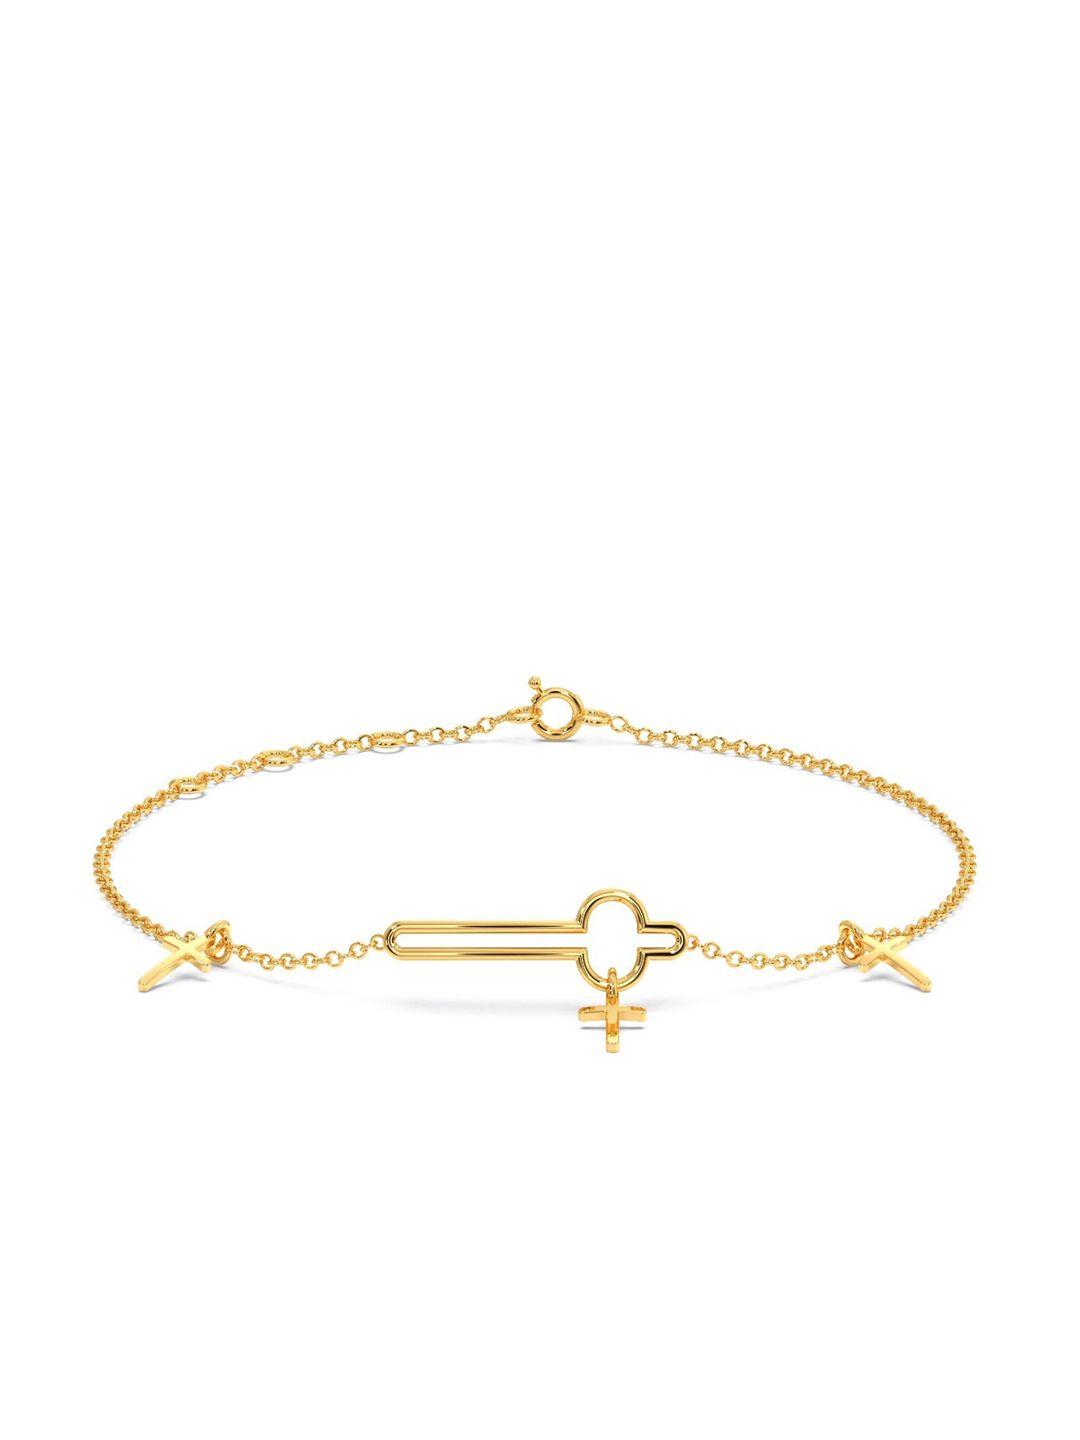 candere-a-kalyan-jewellers-company-14kt-gold-bracelet-1.28gm